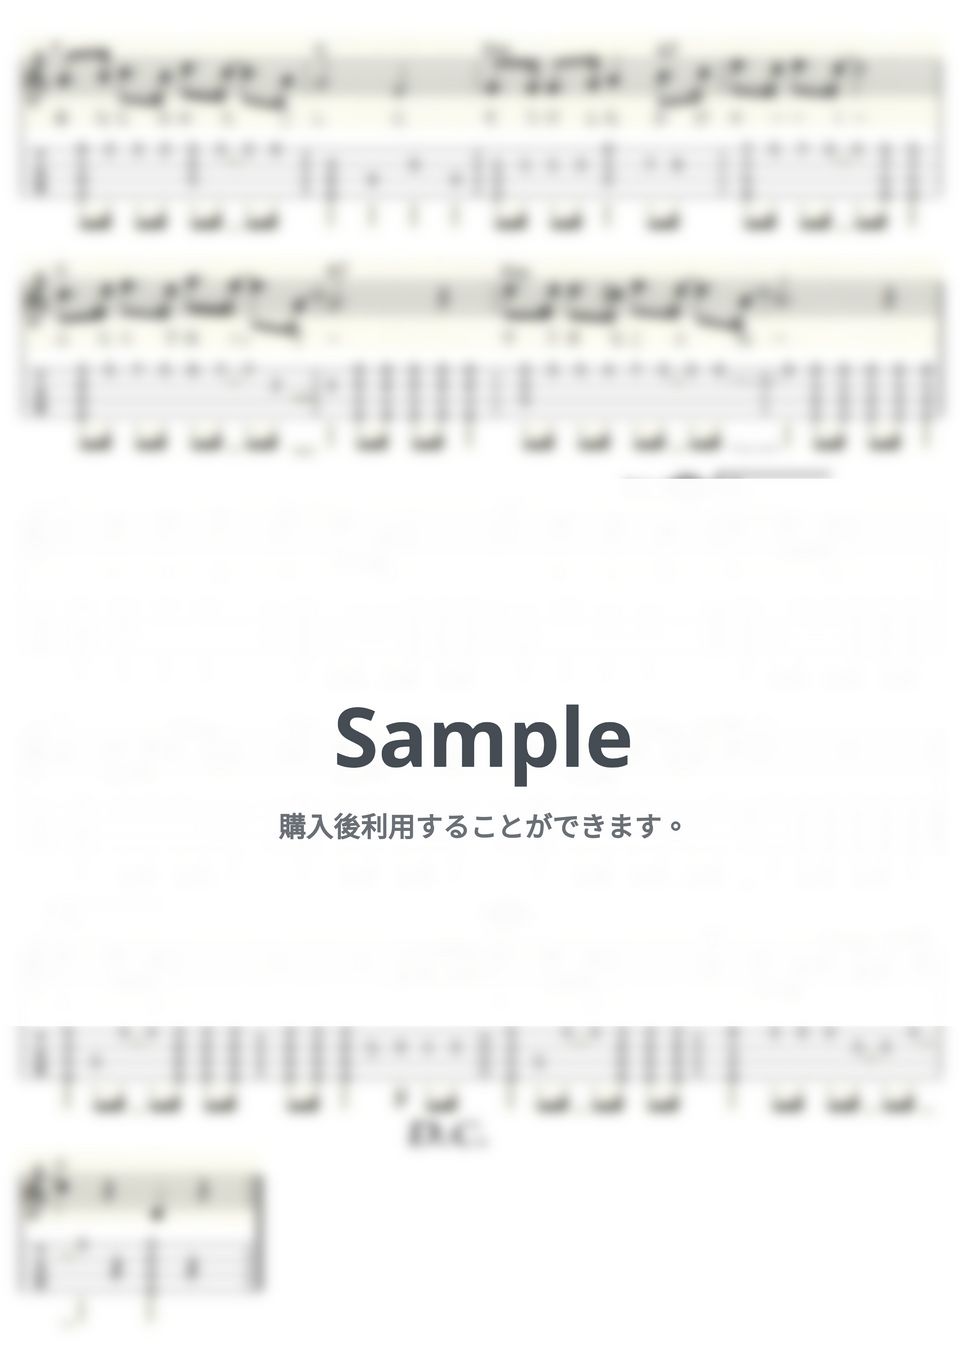 天地真理 - ひとりじゃないの (ｳｸﾚﾚｿﾛ/High-G・Low-G/中級) by ukulelepapa